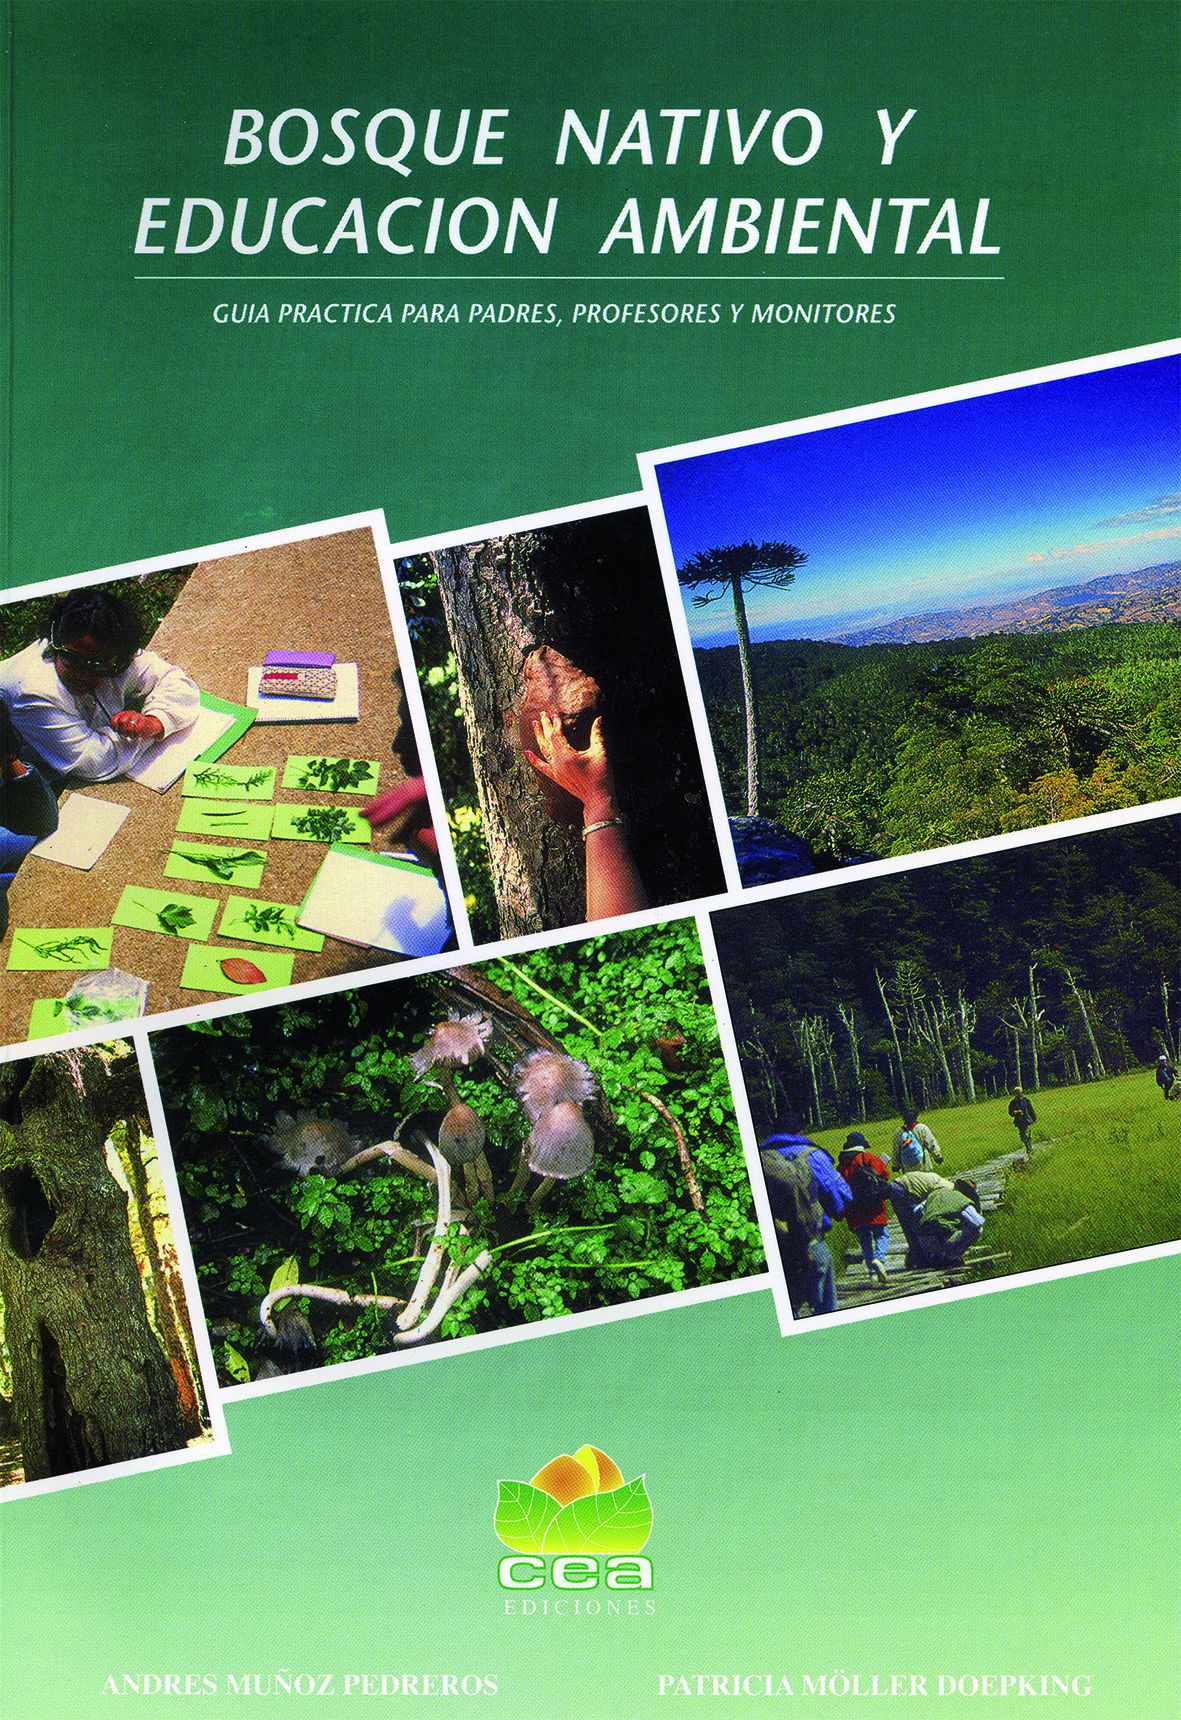 Bosque Nativo y Educación Ambiental - Guía práctica para padres, profesores y monitores